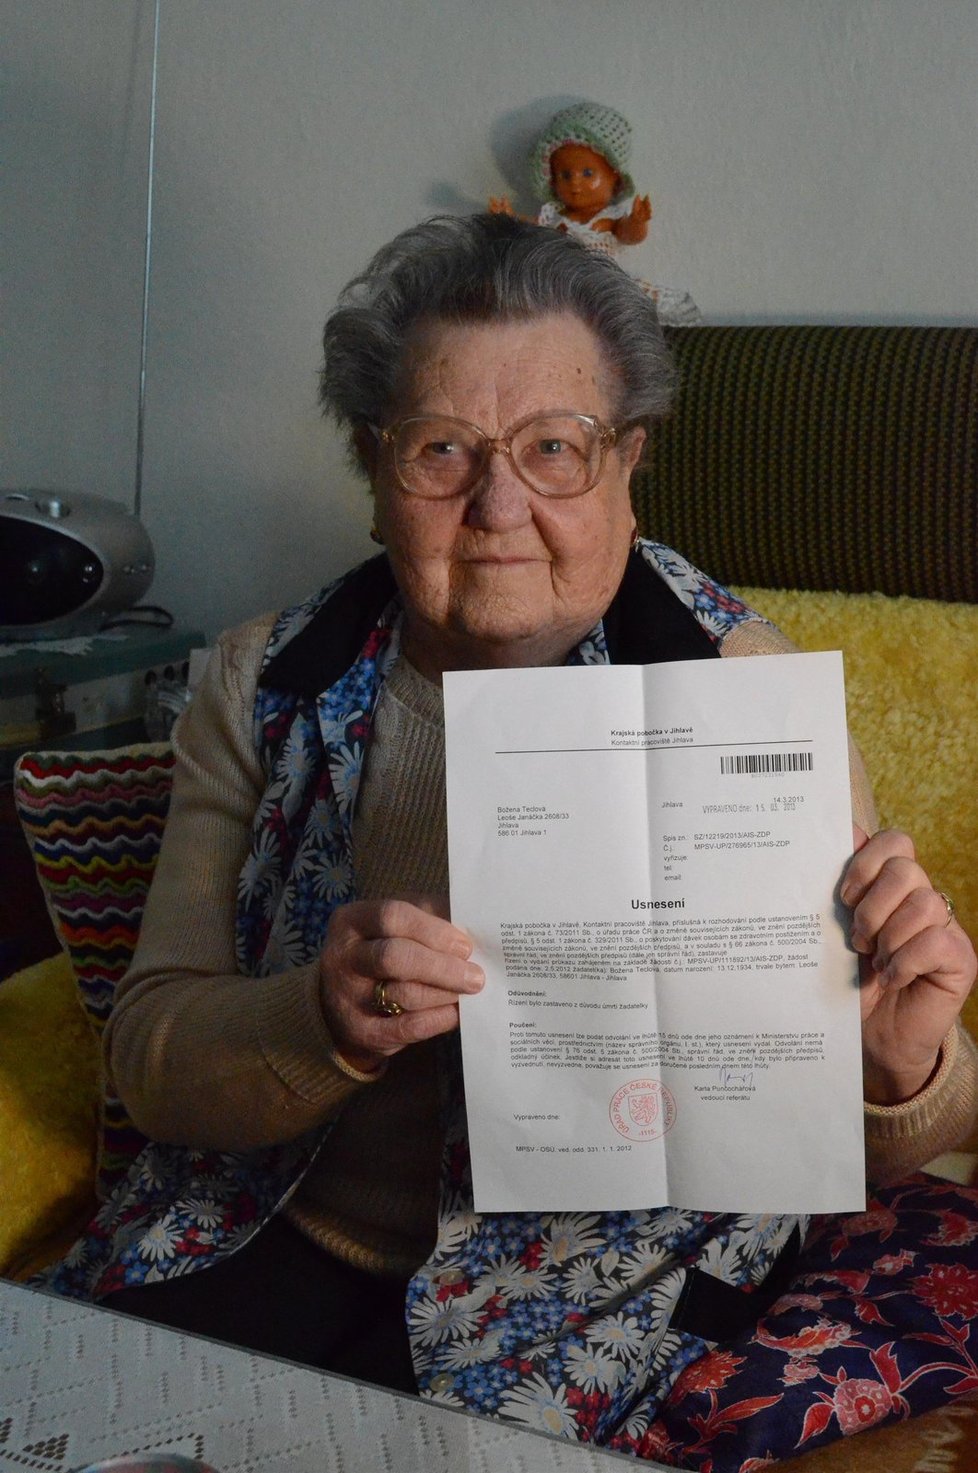 Paní Božena chtěla po jihlavském Úřadu práce prodloužení platnosti parkovací karty pro osoby se zdravotním postižením, místo toho jí přišel tento dopis